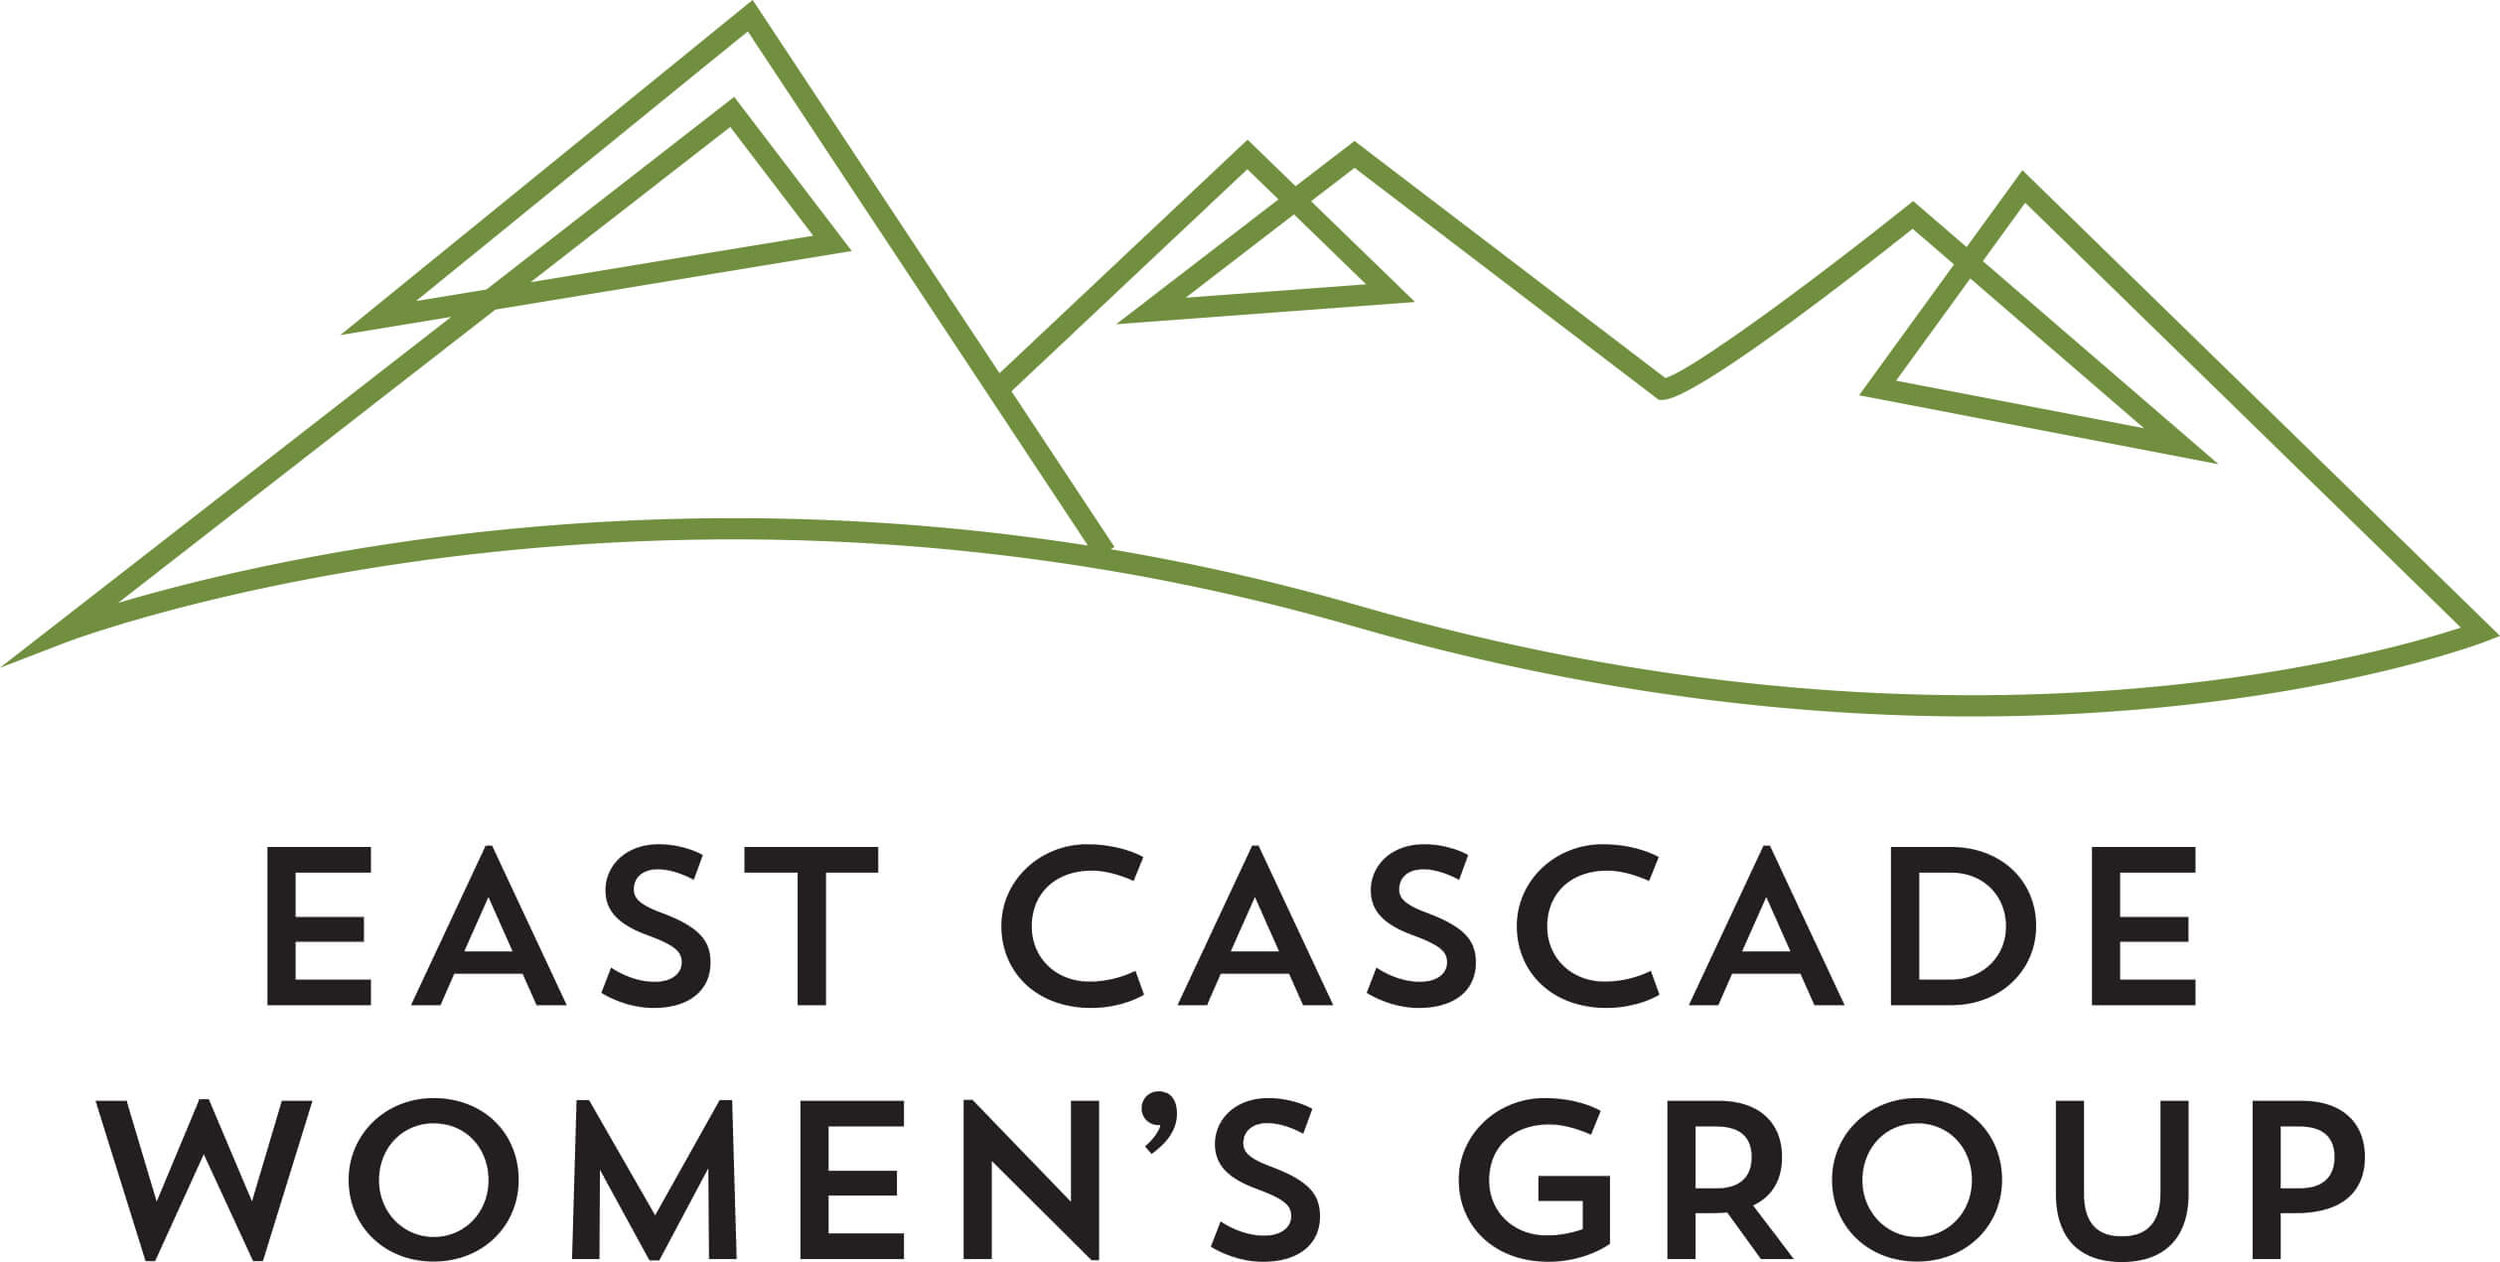 East Cascade Women's Group Logo.jpg